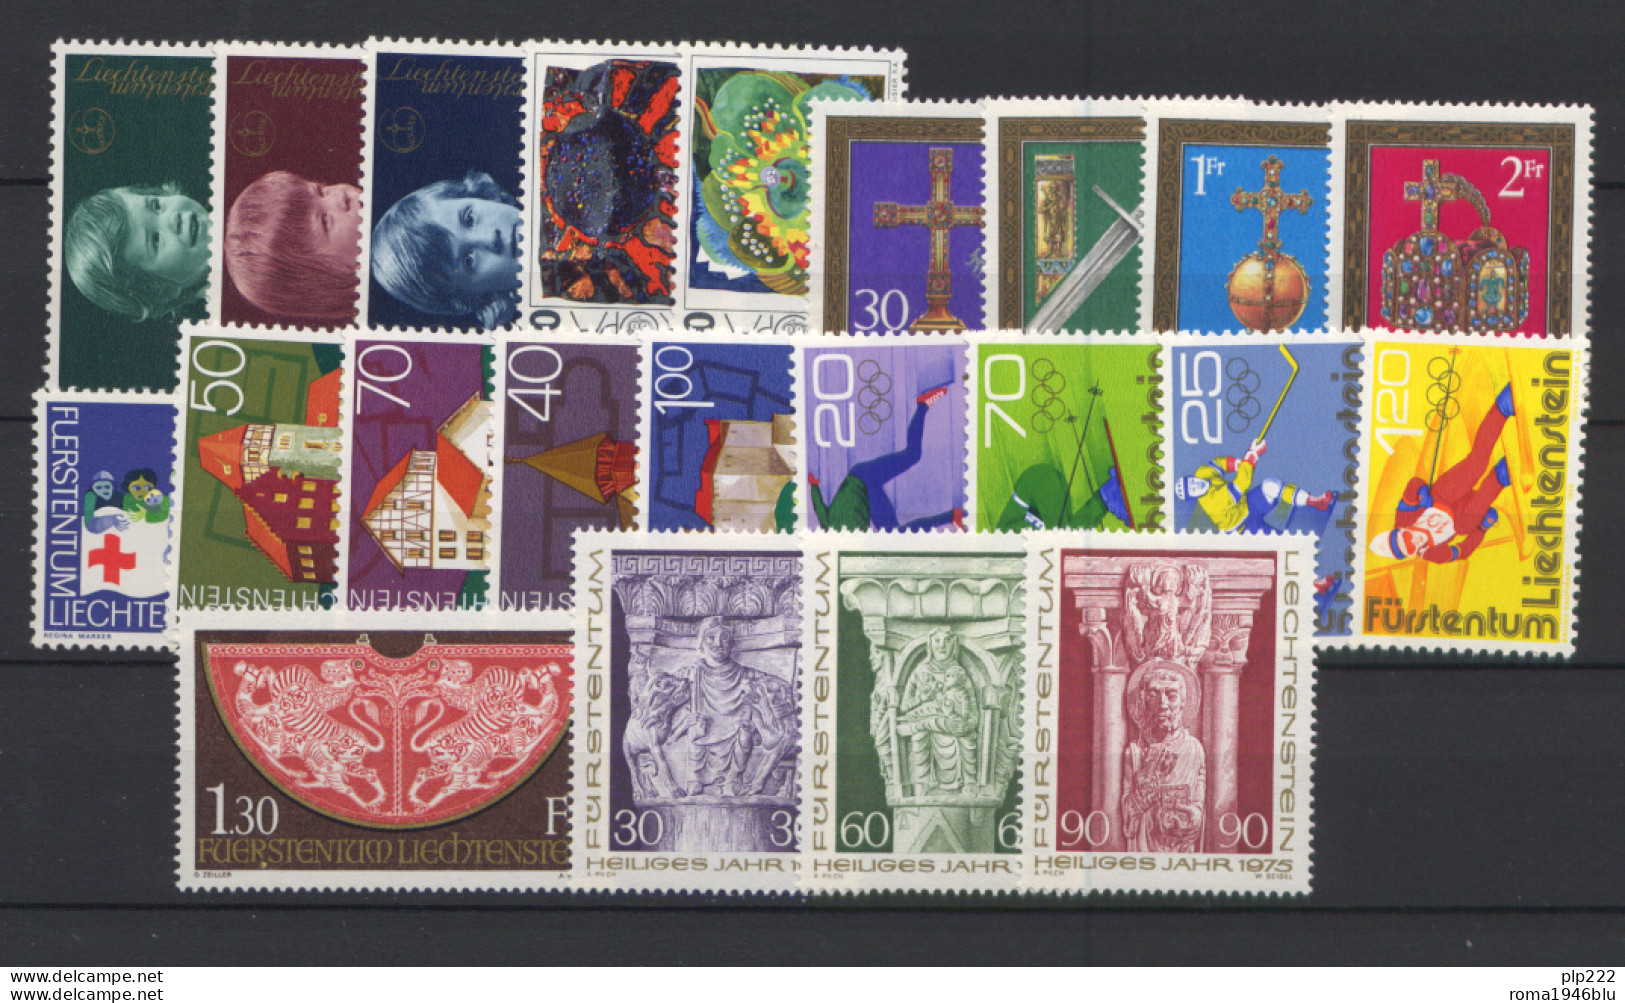 Liechtenstein 1975 Annata Completa / Complete Year Set **/MNH VF - Annate Complete